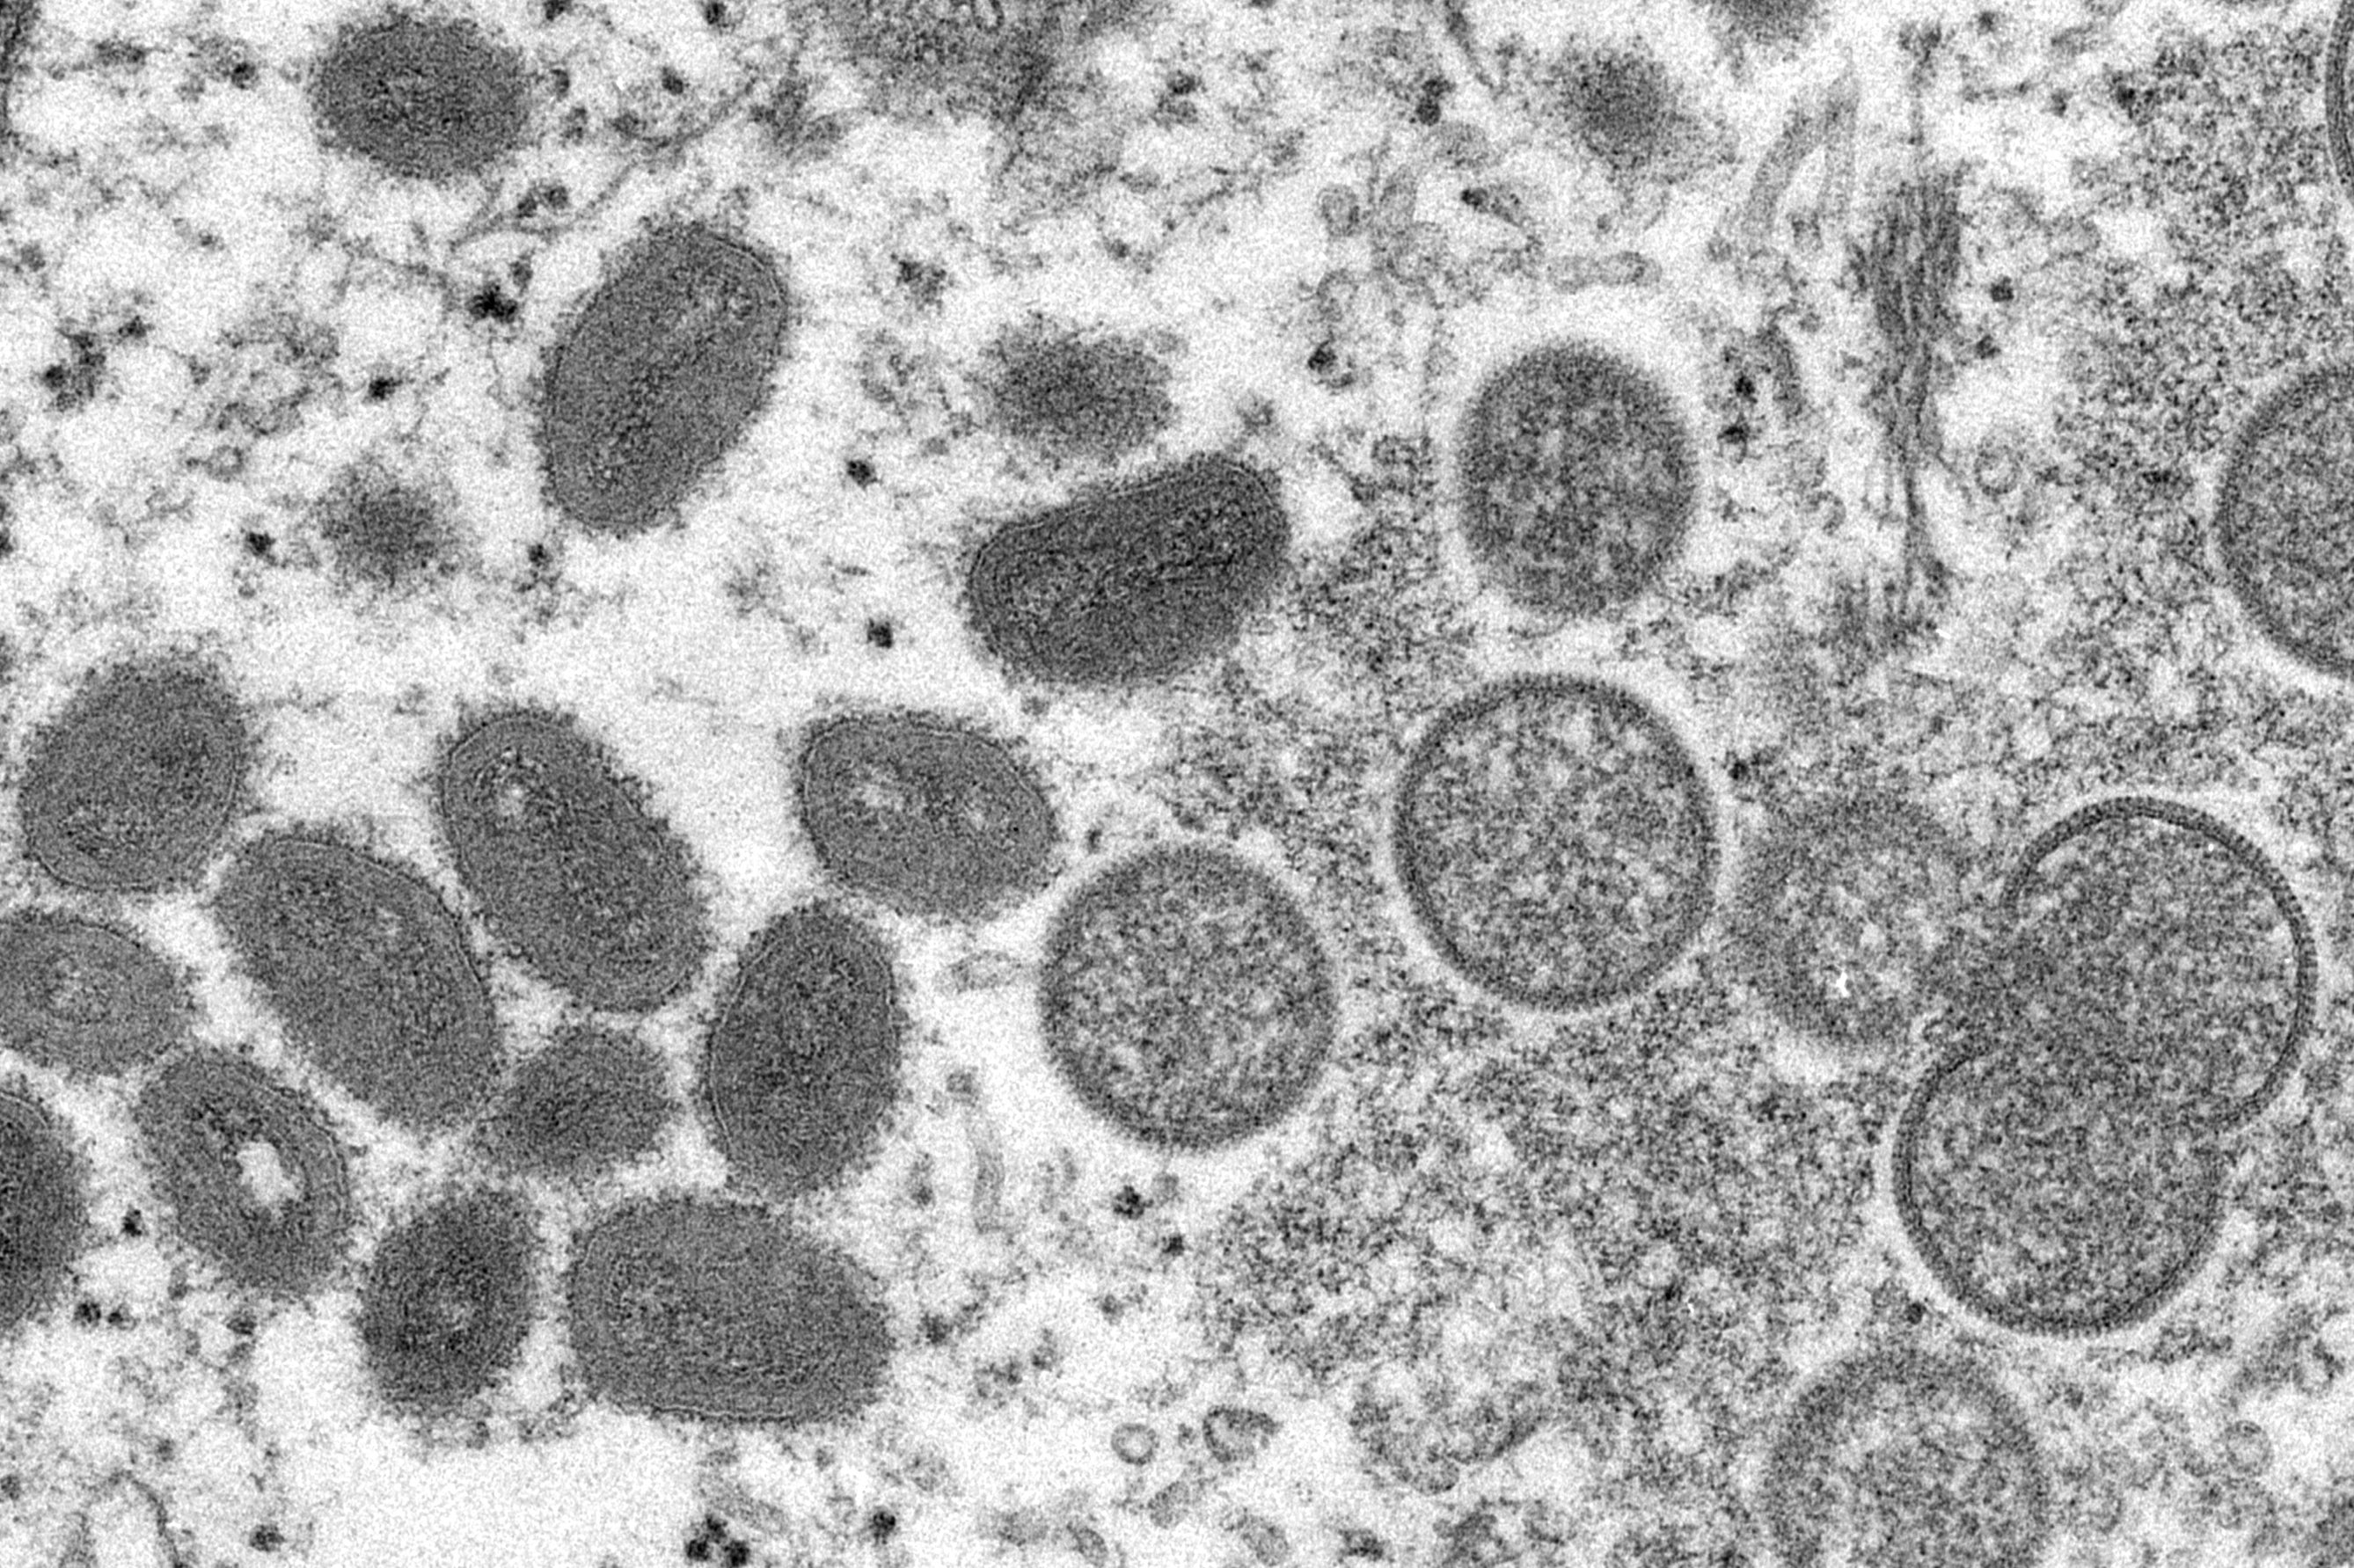 First case of virus found in Ireland